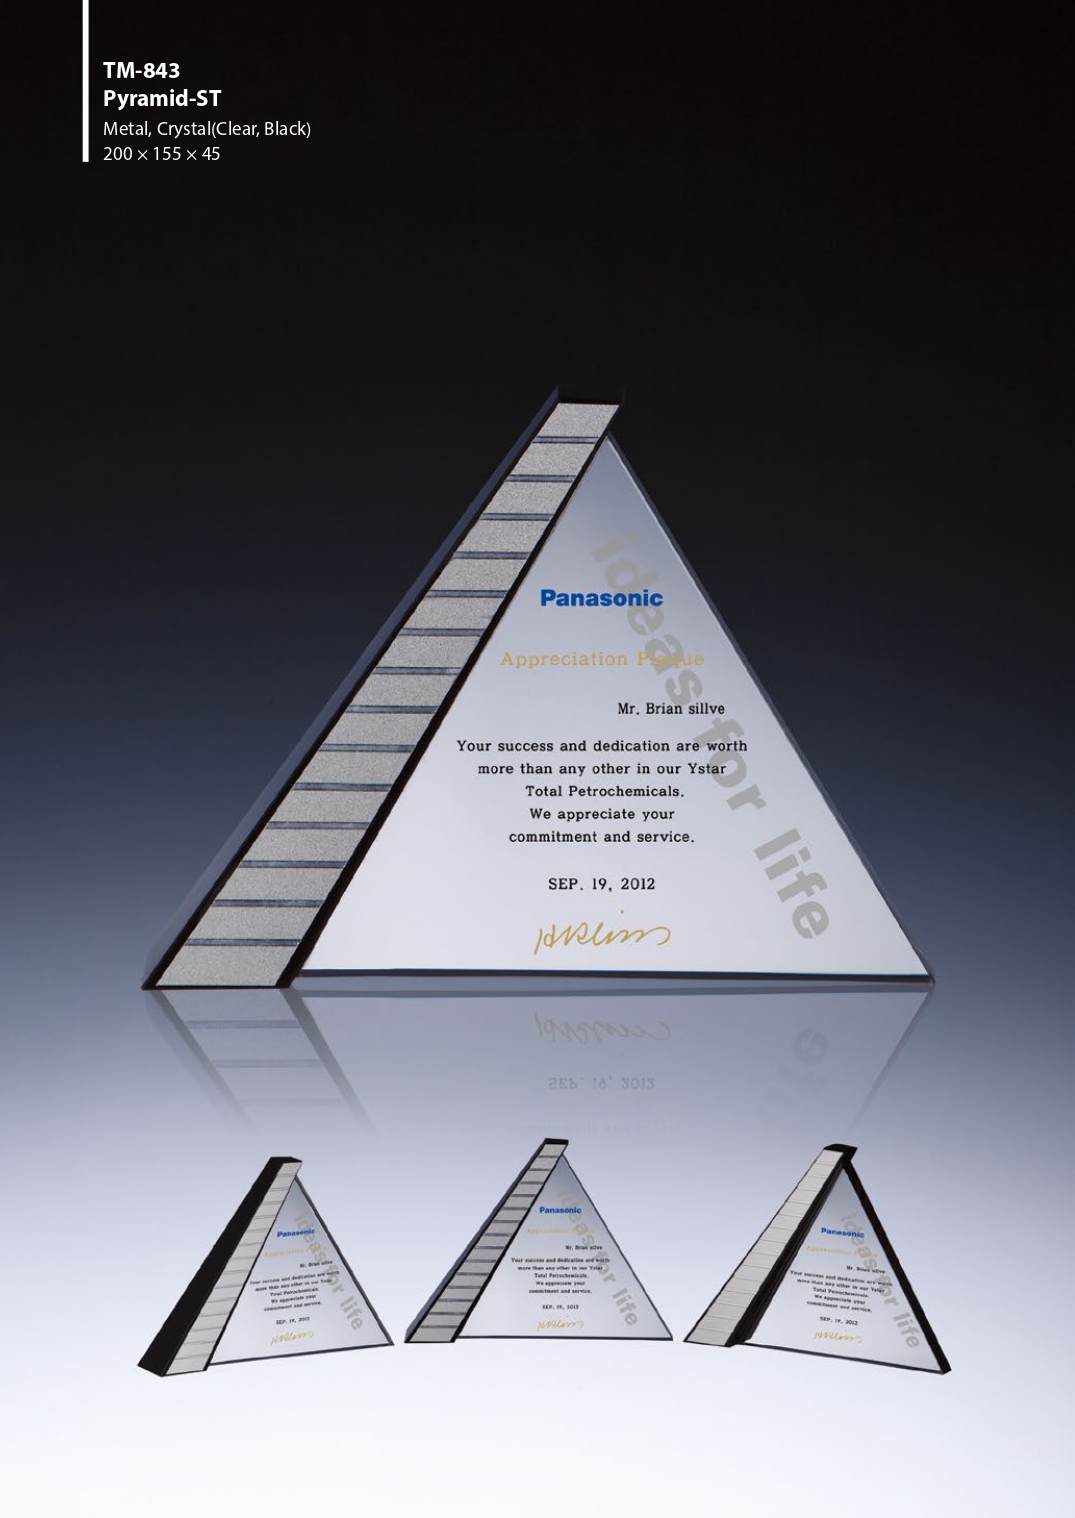 KLPK40137 Pyramid-ST 금속 크리스탈 상패 상패 트로피 판촉물 제작 케이엘피코리아